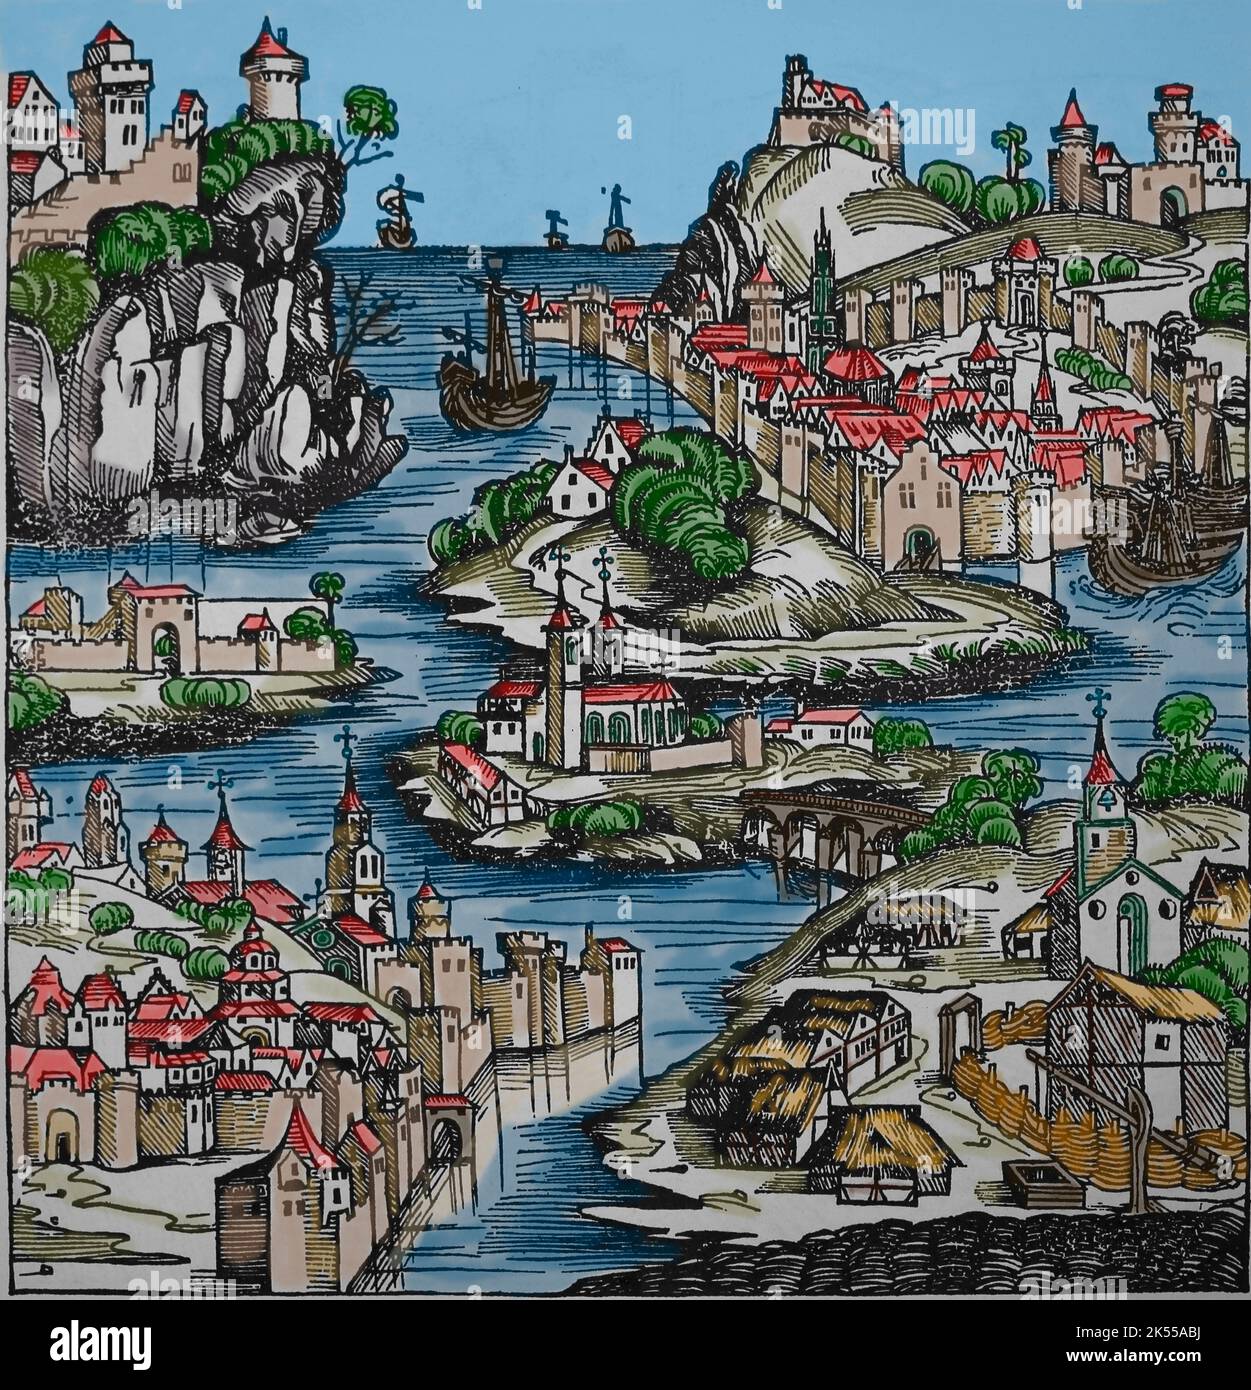 Littaw a été attribué au « roi de Pologne ». Paysage polonais rempli de châteaux, villages, églises et bateaux. Liber Chronicarum, 1493. Gravure. Banque D'Images